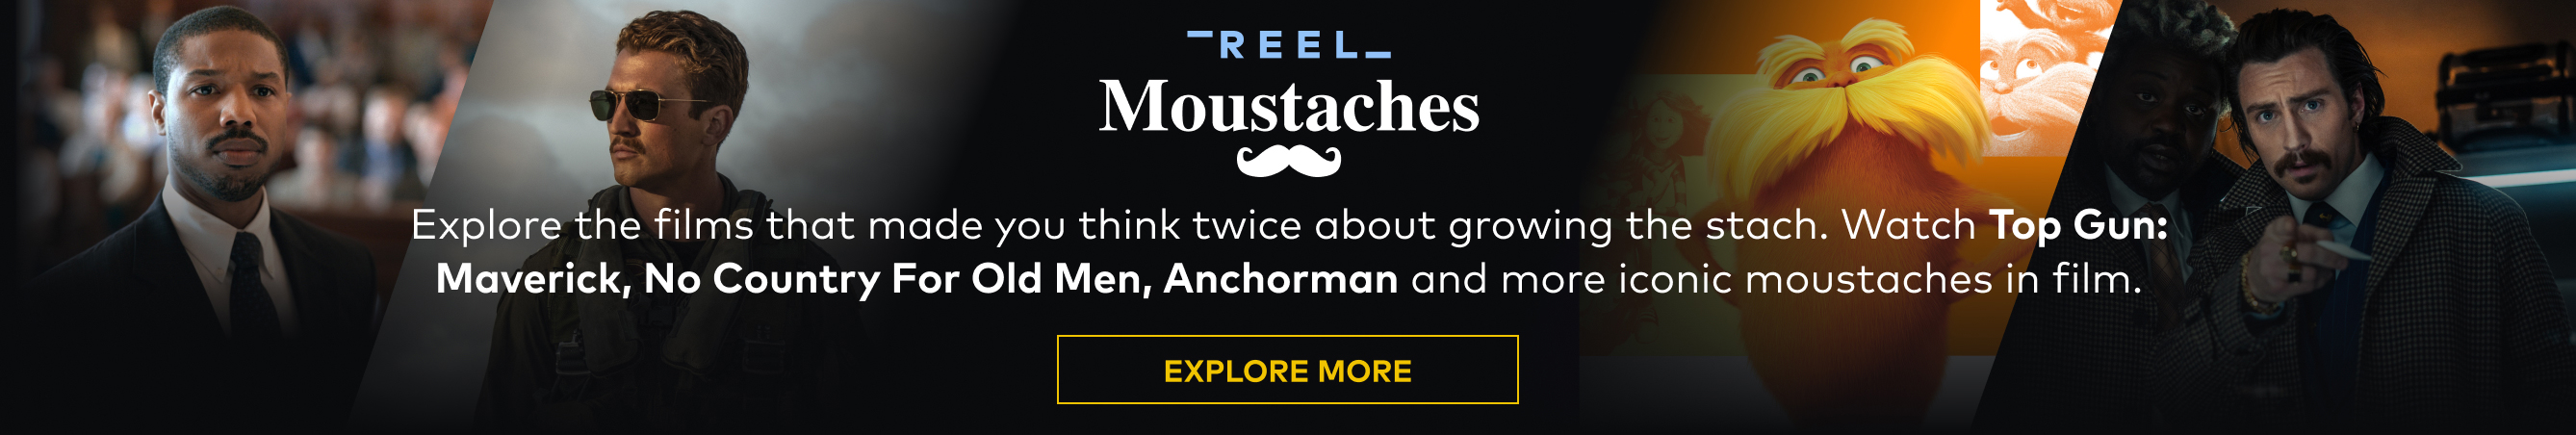 Reel Moustaches